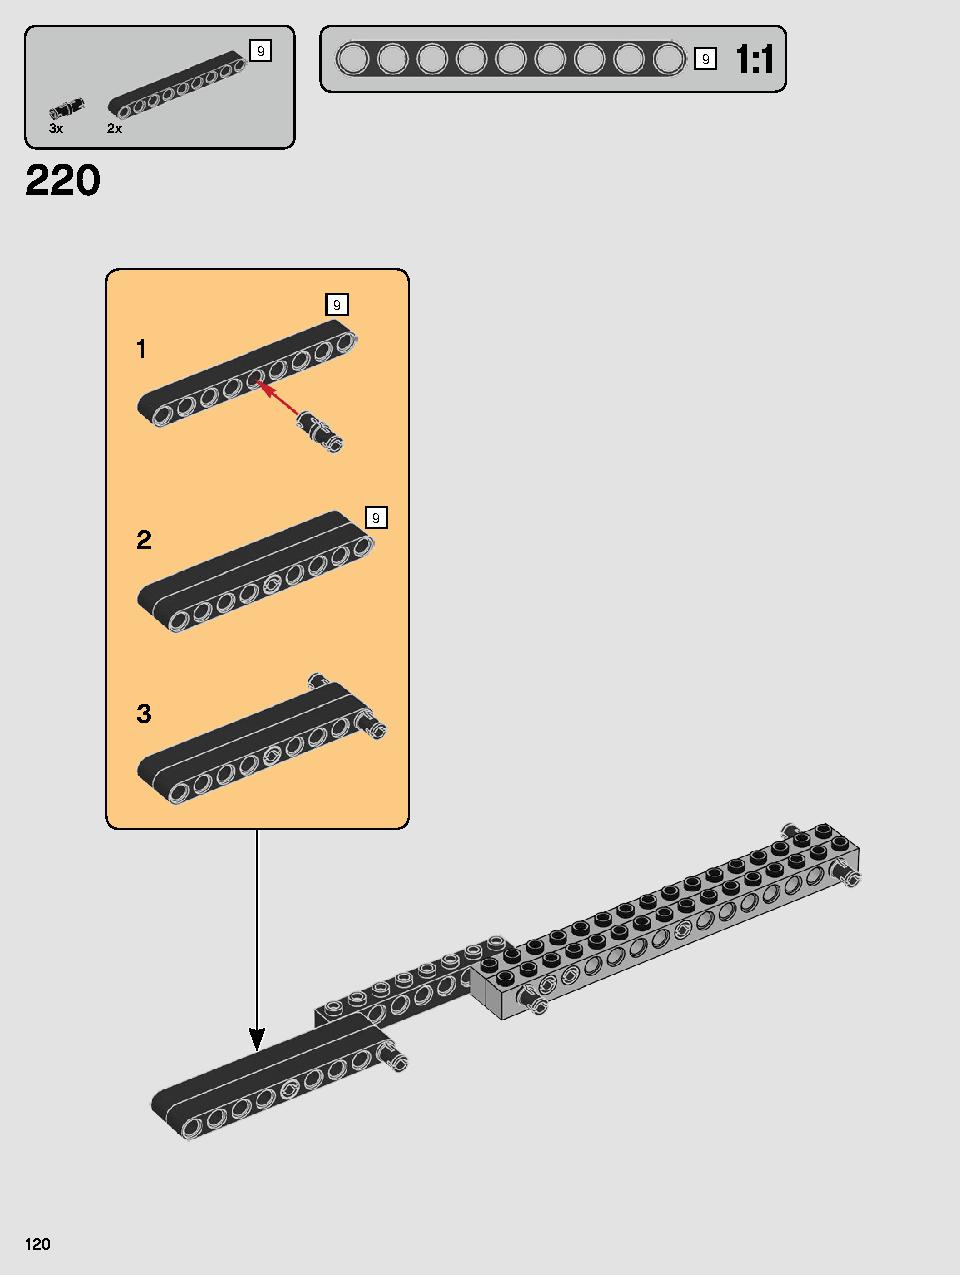 스타워즈 카일로 렌의 셔틀™ 75256 레고 세트 제품정보 레고 조립설명서 120 page